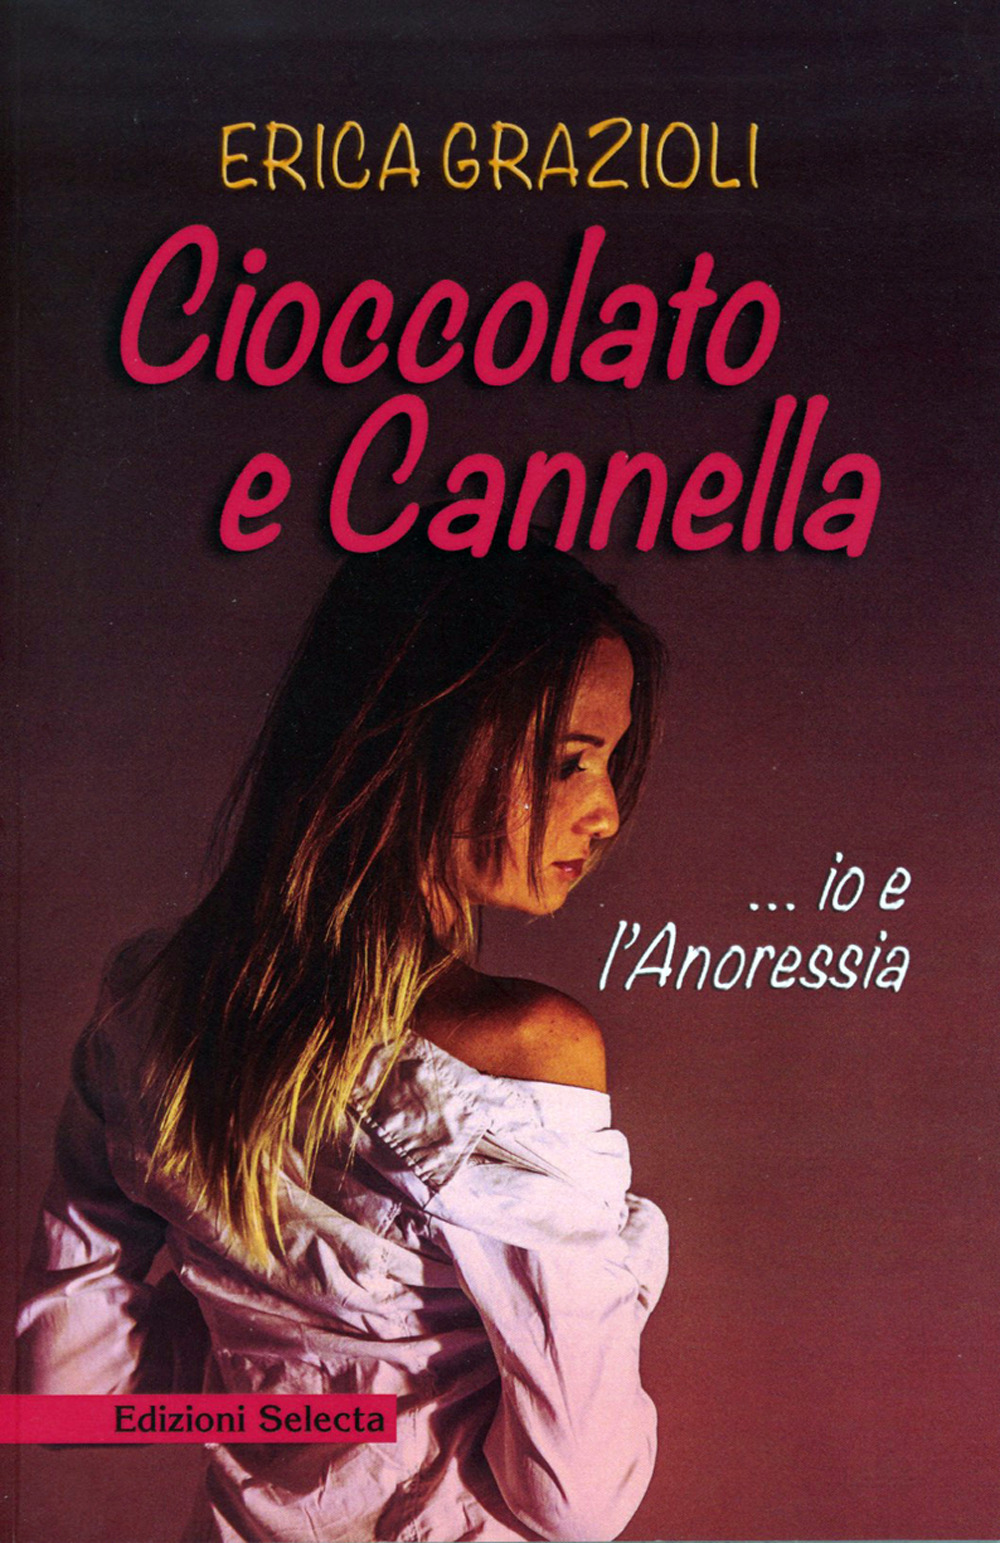 Image of Cioccolato e cannella ...io e l'anoressia